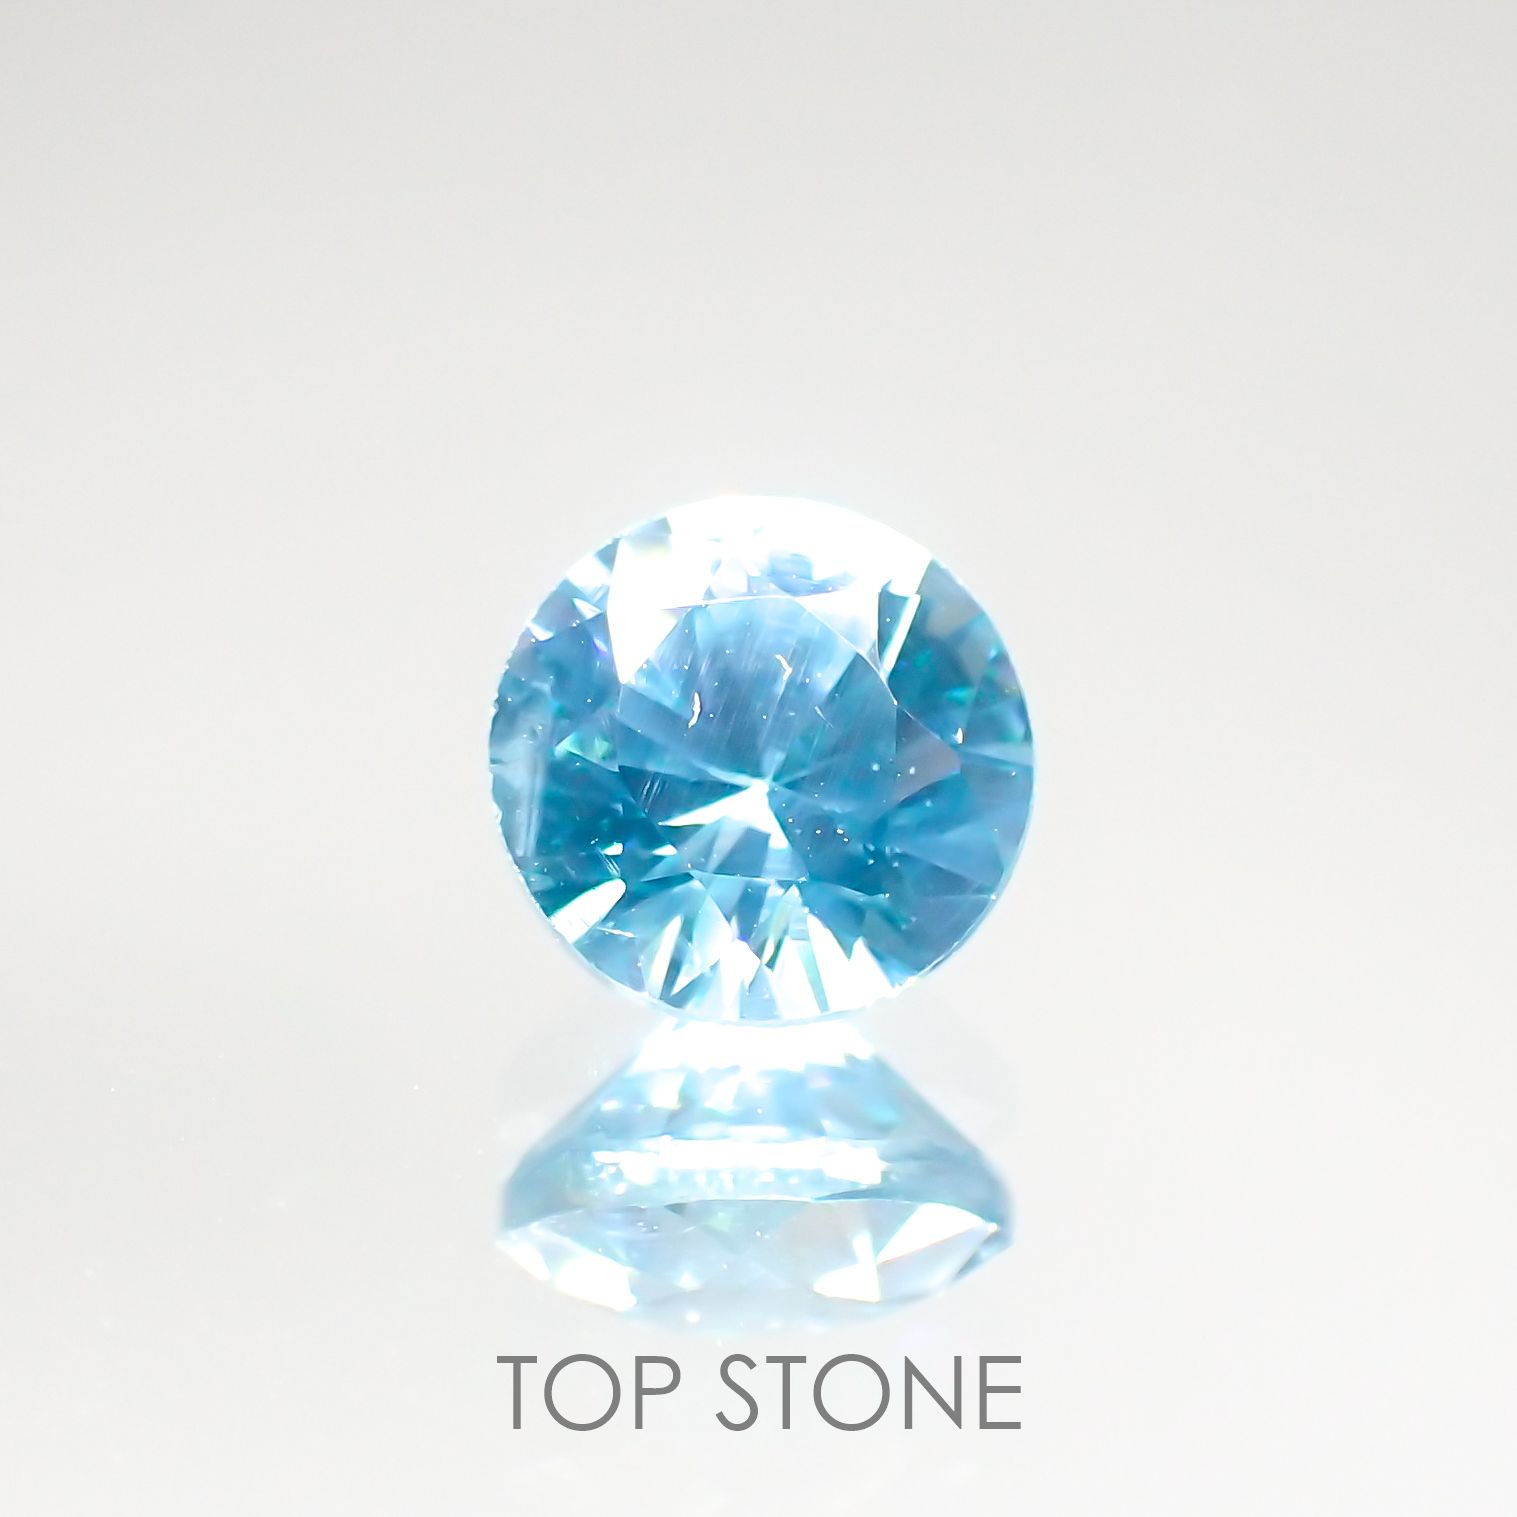 宝石名から探す / ジルコン / ブルージルコン 通販 | TOP STONE(トップ 